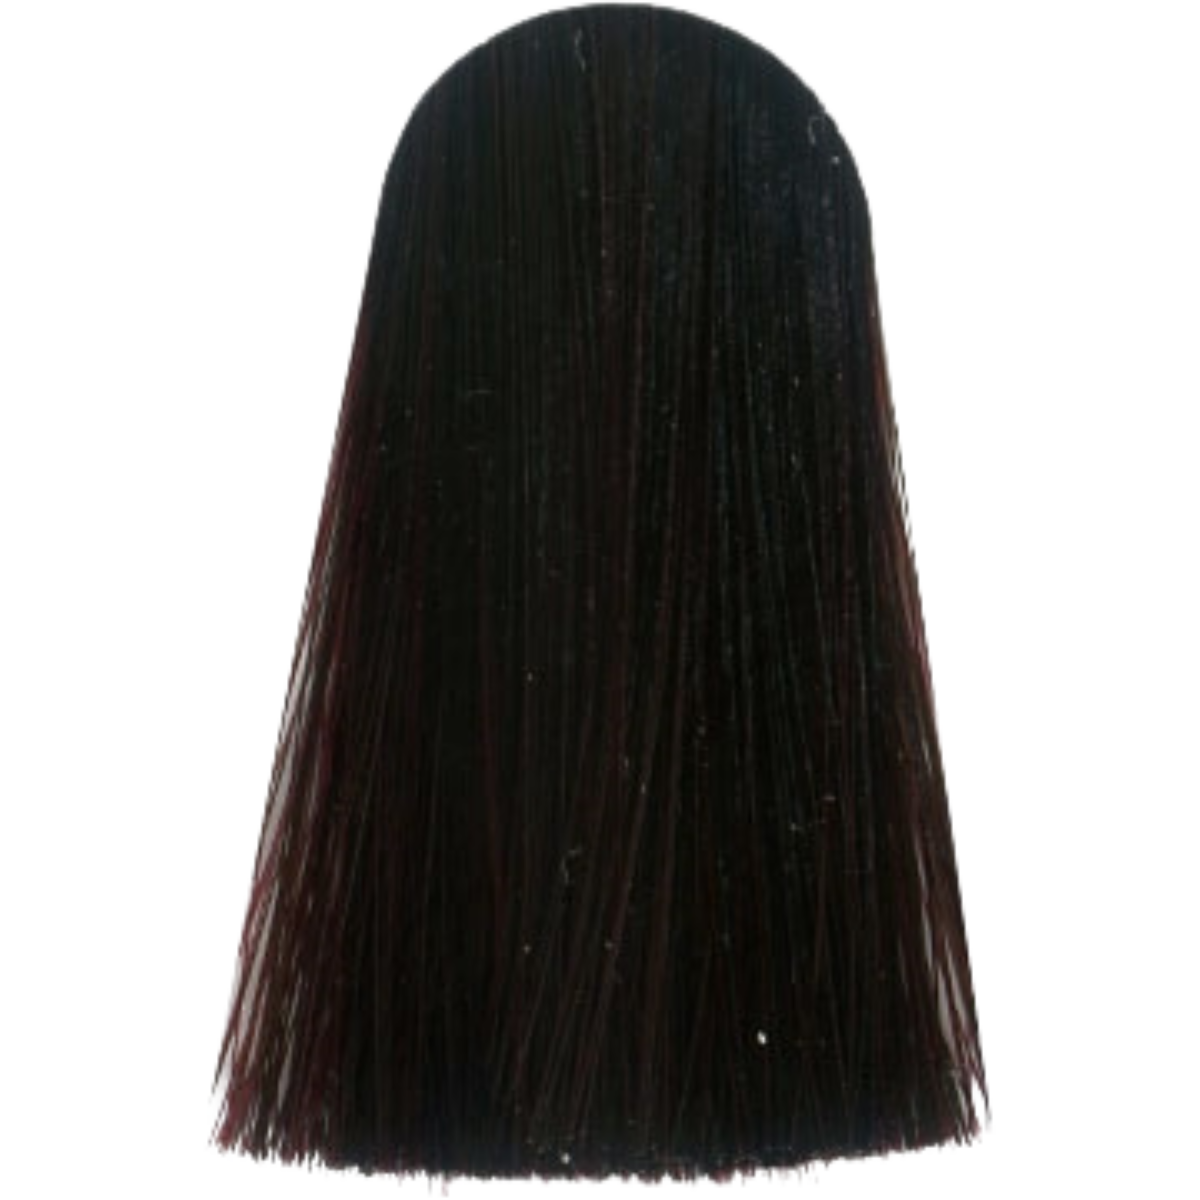 צבע לשיער LIGHT BROWN EXTRA VIOLET 5.77X אינדולה INDOLA צבע לשיער 60 גרם